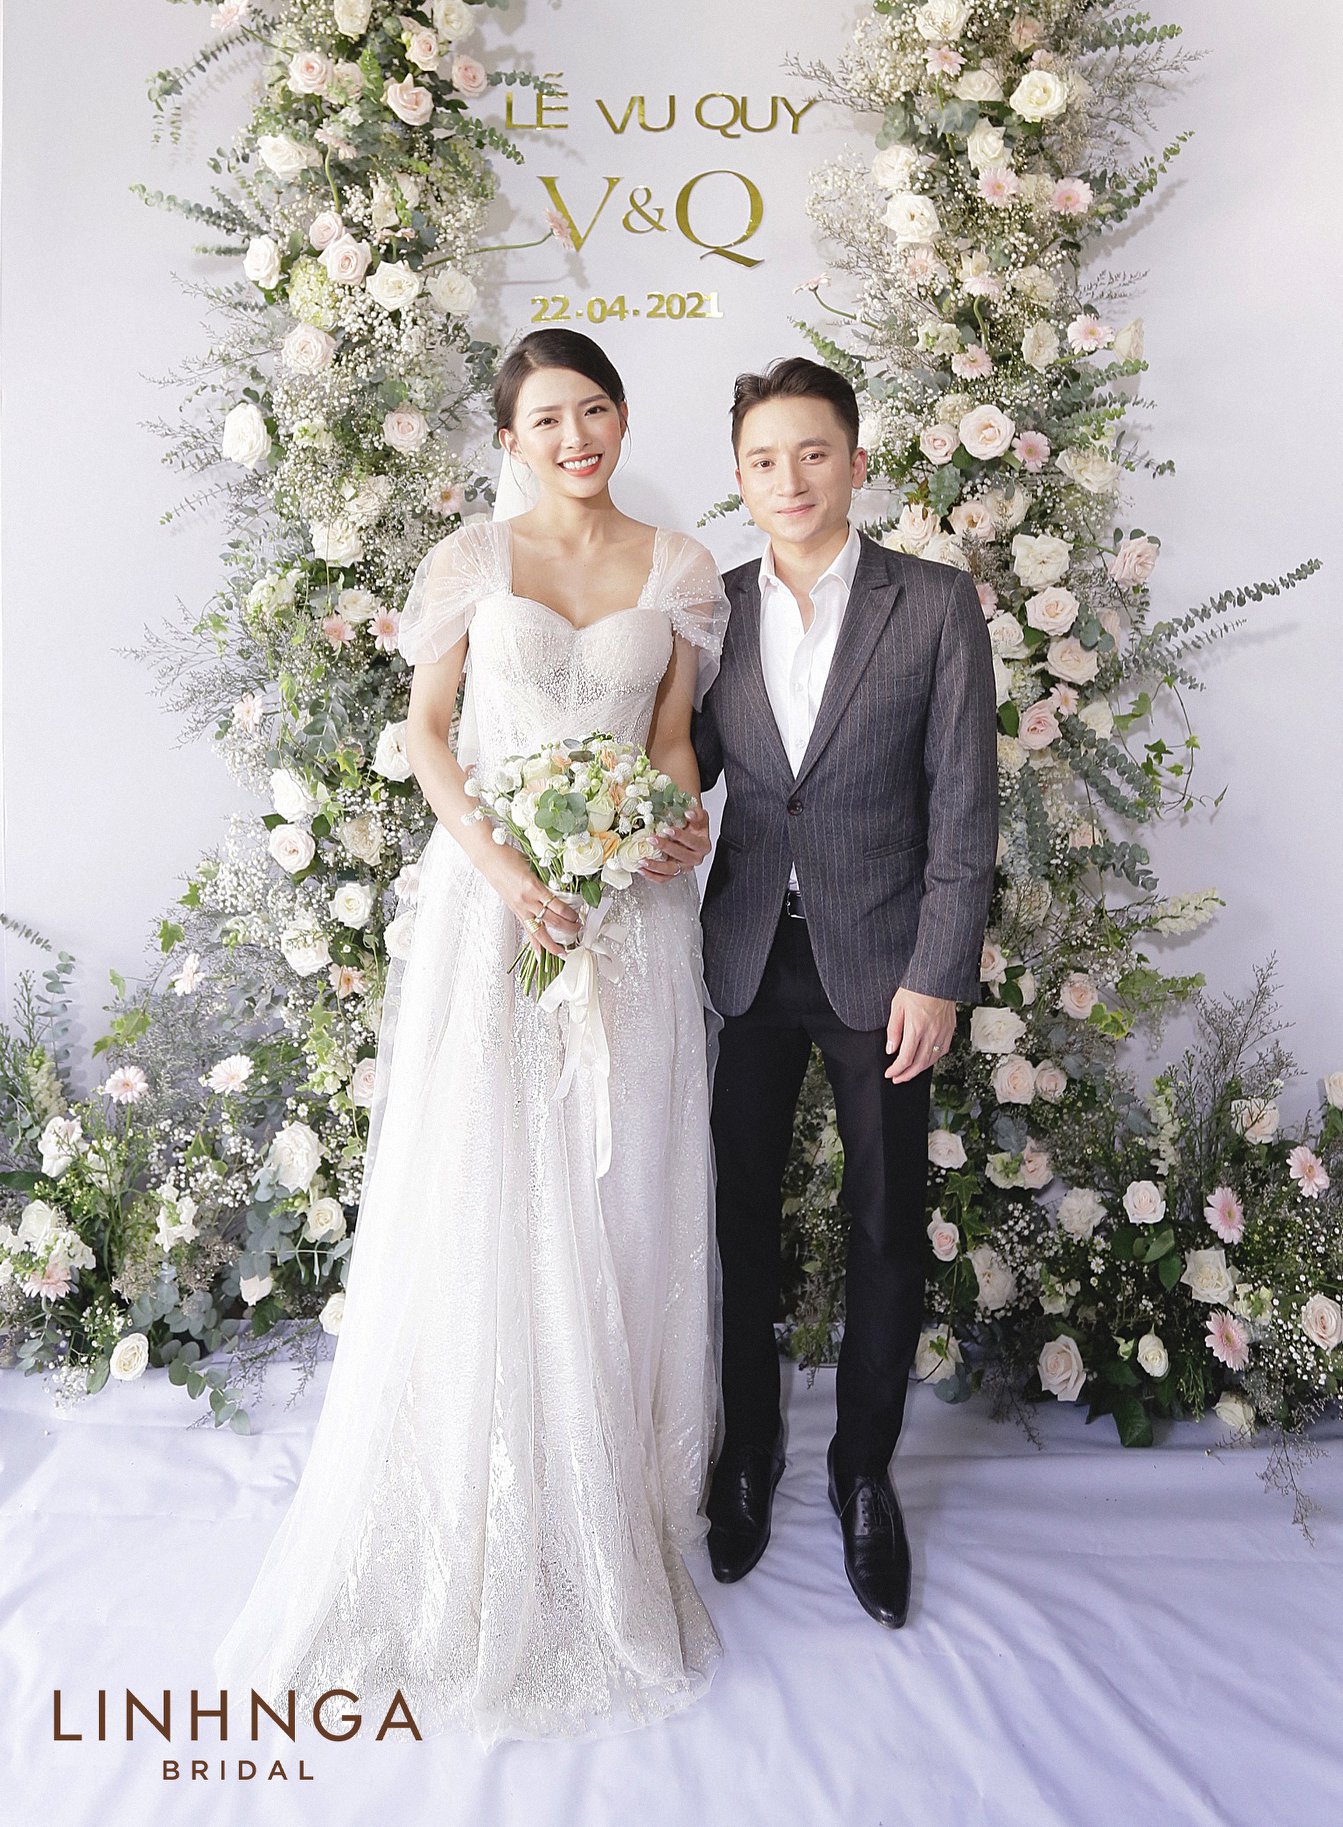 Đám cưới Phan Mạnh Quỳnh và vợ hot girl tại Nha Trang: Cô dâu khoe vòng 1 hững hờ, “cẩu lương” ngập trời trong ngày trọng đại - Ảnh 2.